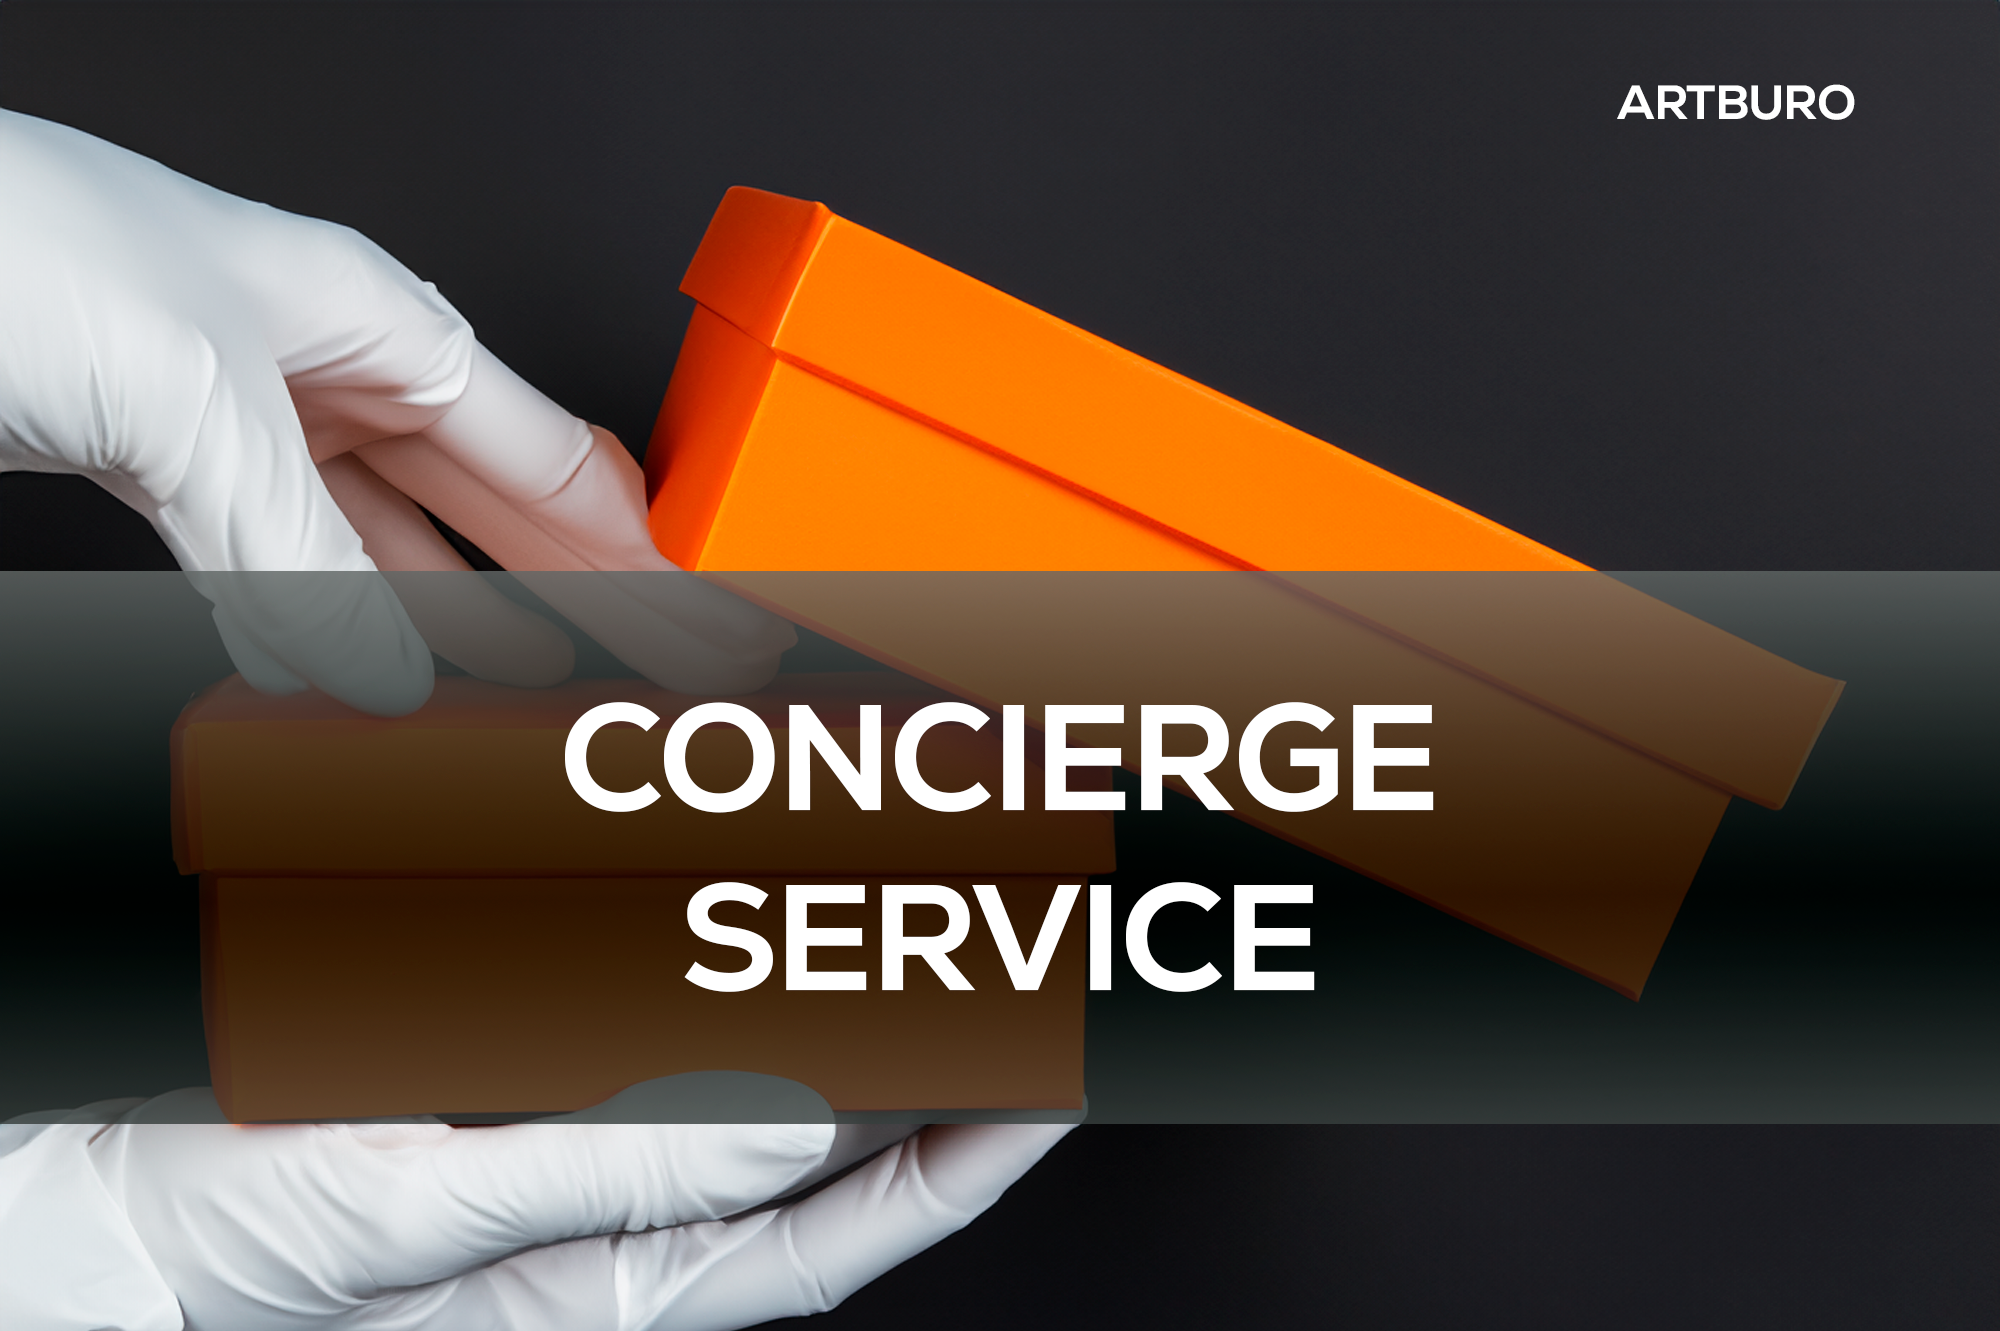 ARTBURO - Concierge Service